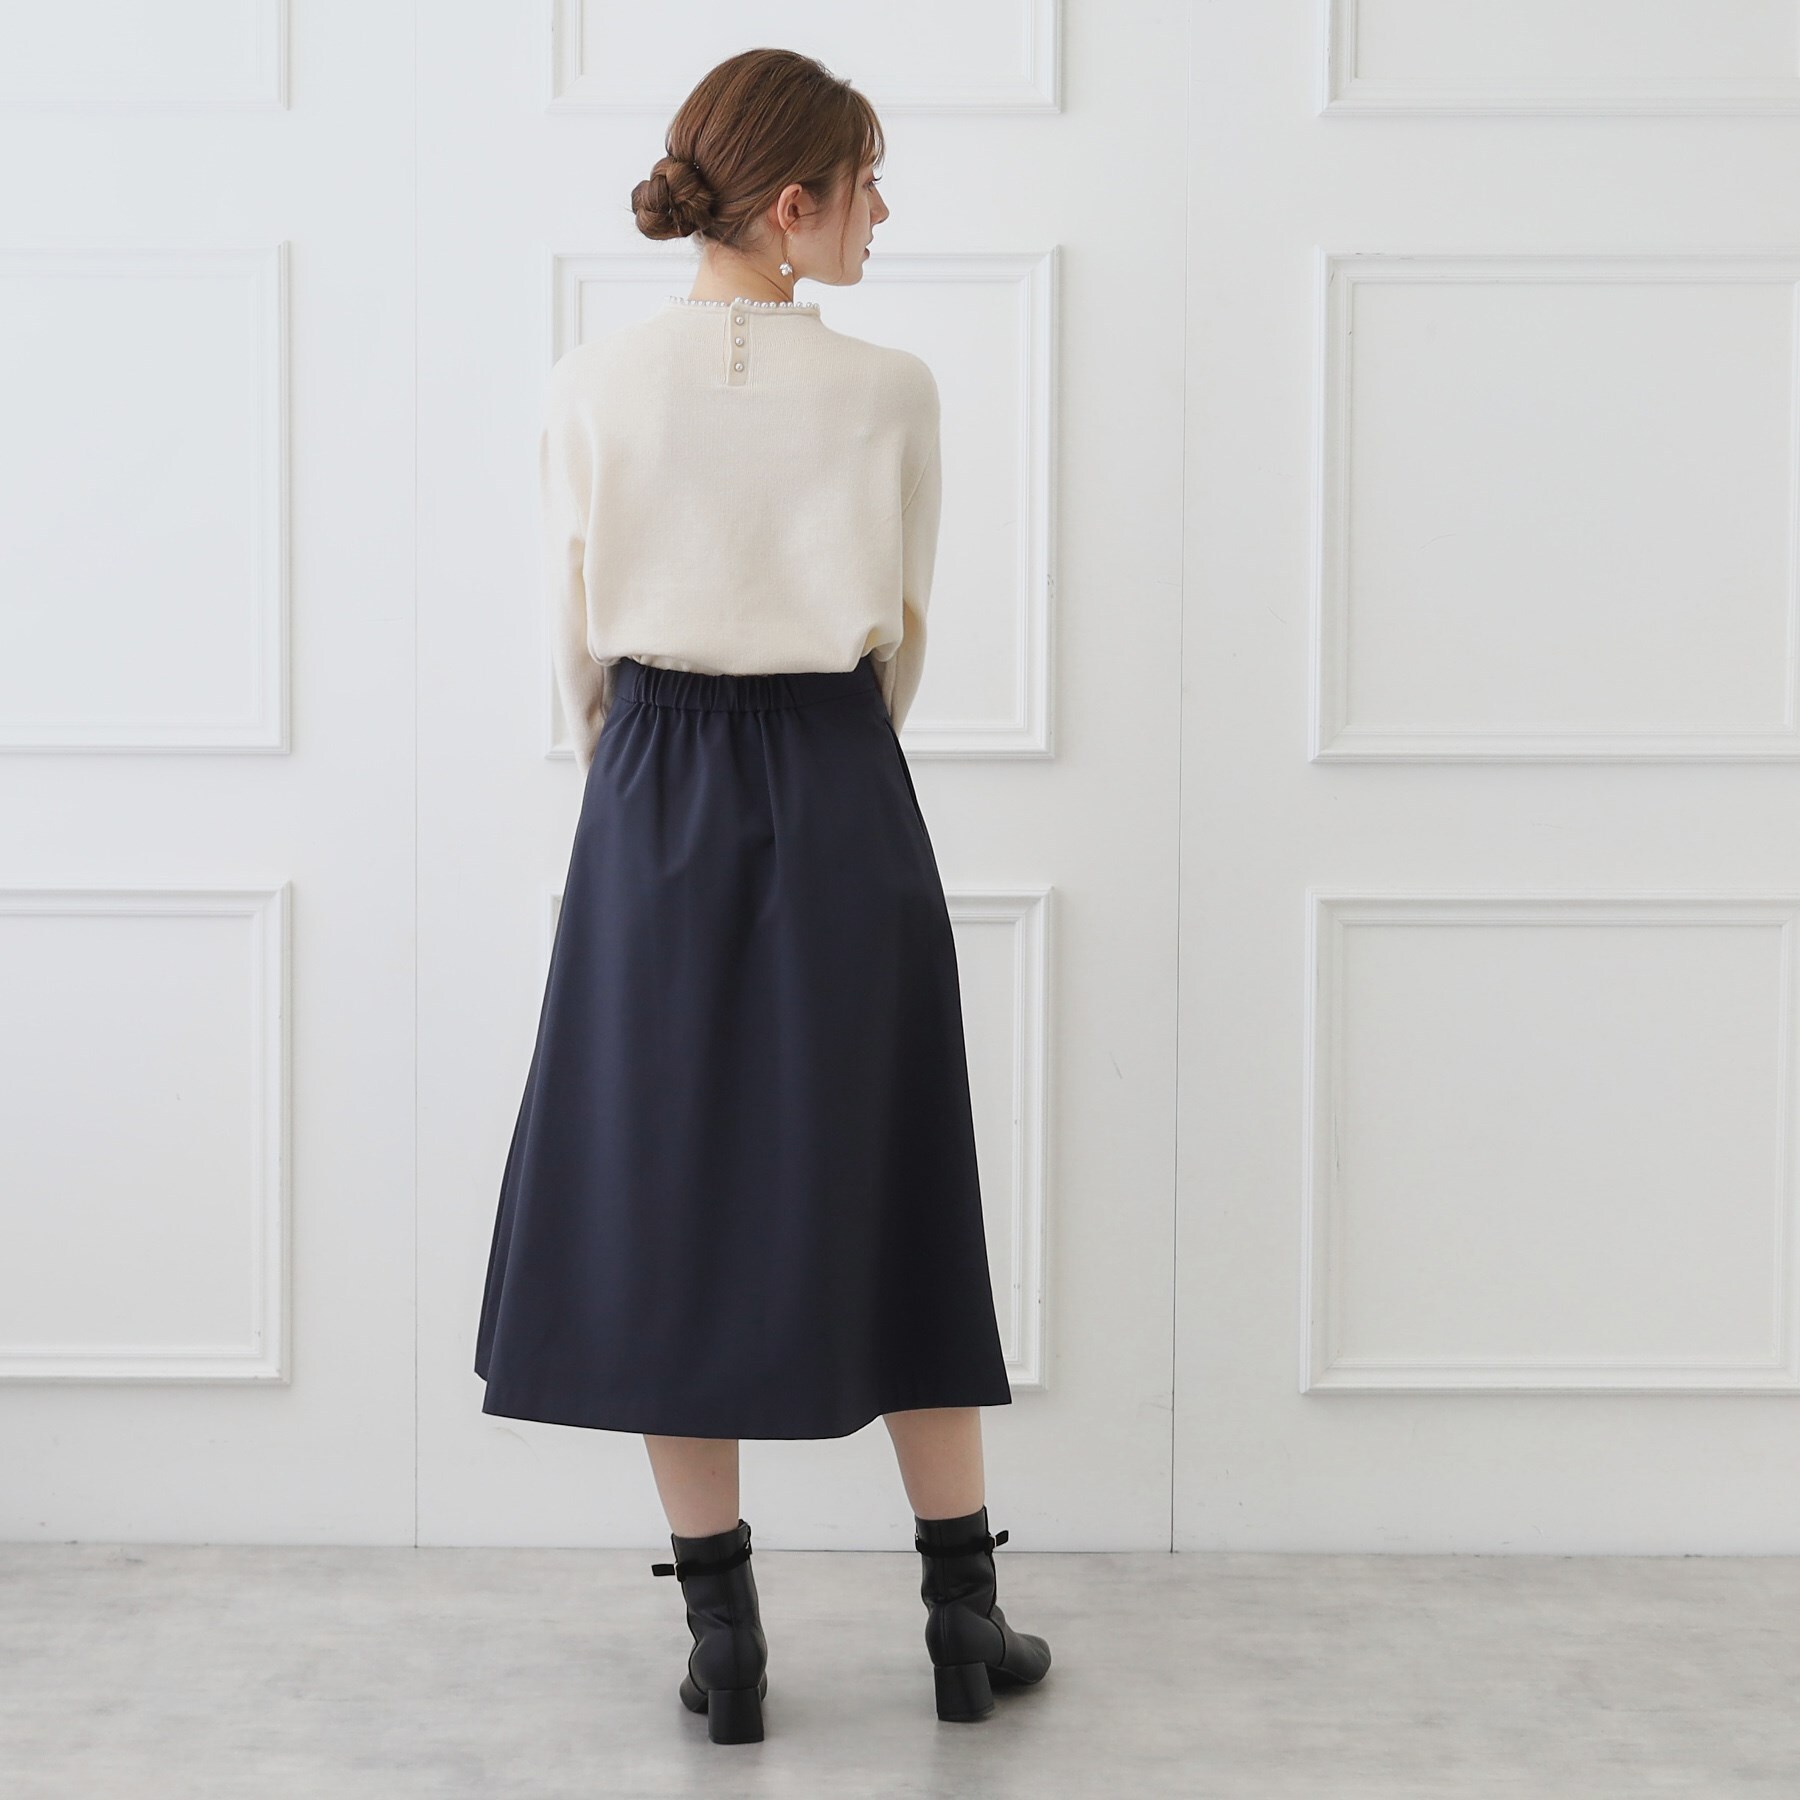 ボンディングスカート|Couture brooch(クチュール ブローチ)の通販